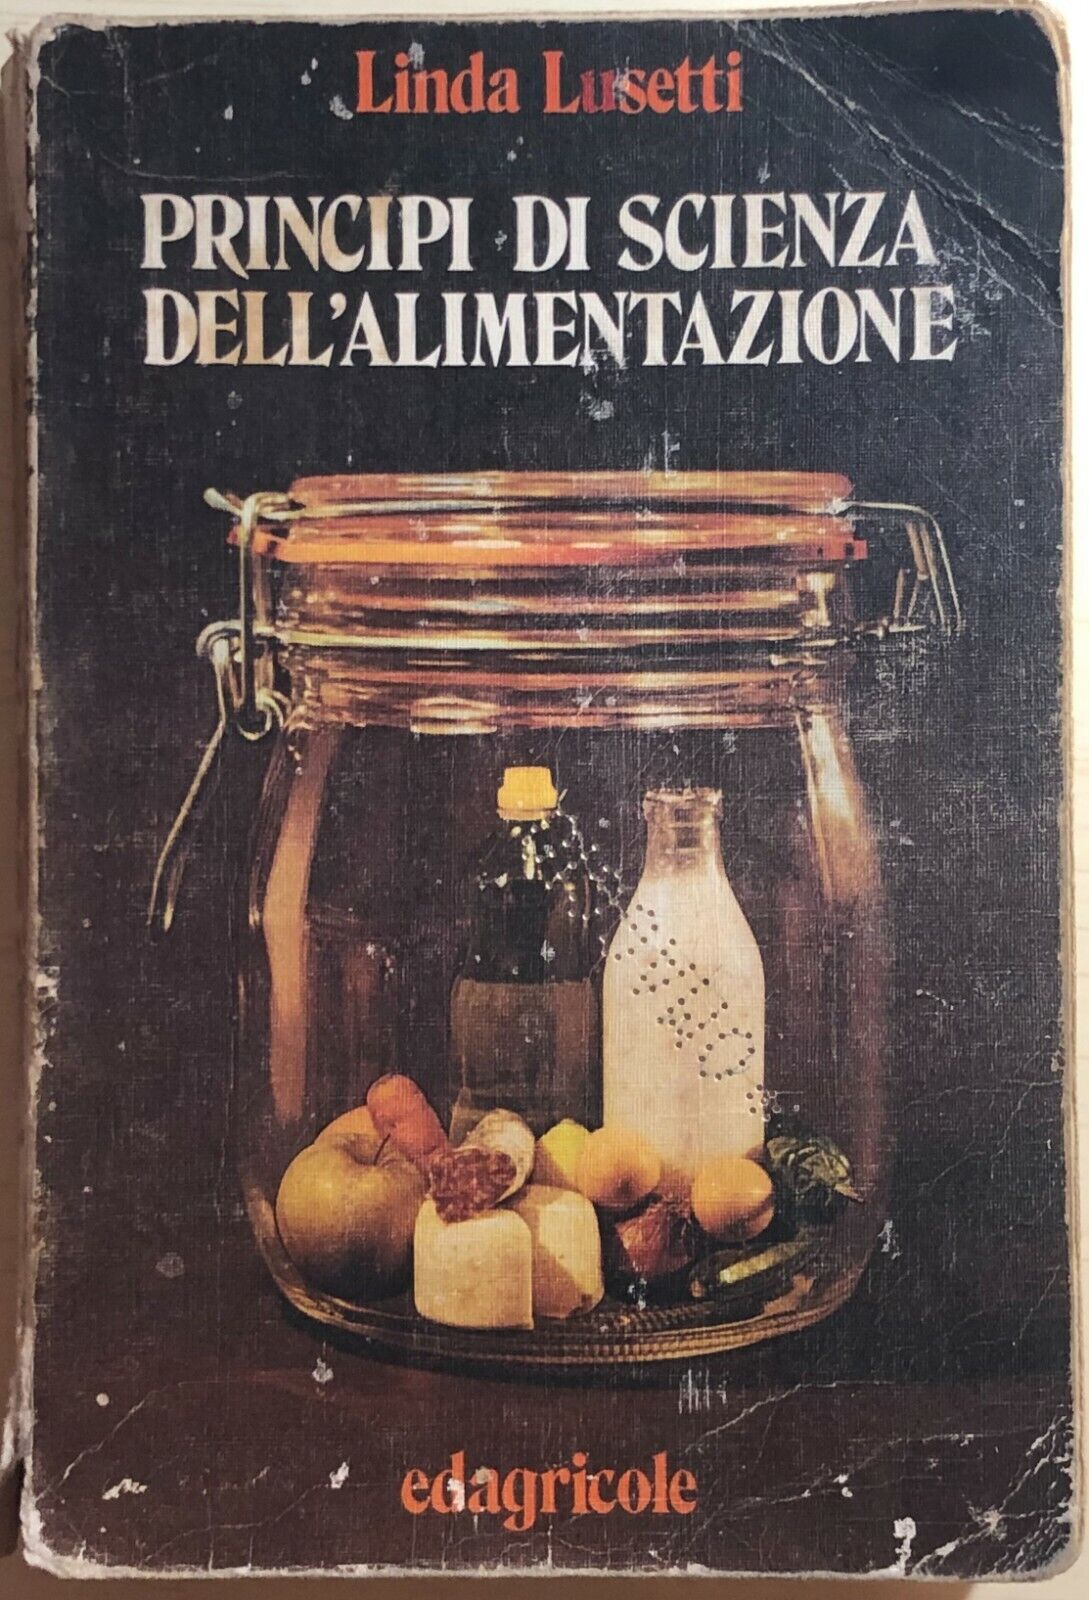 Principi di scienza delL'alimentazione di Linda Lusetti,  1974,  Edagricole